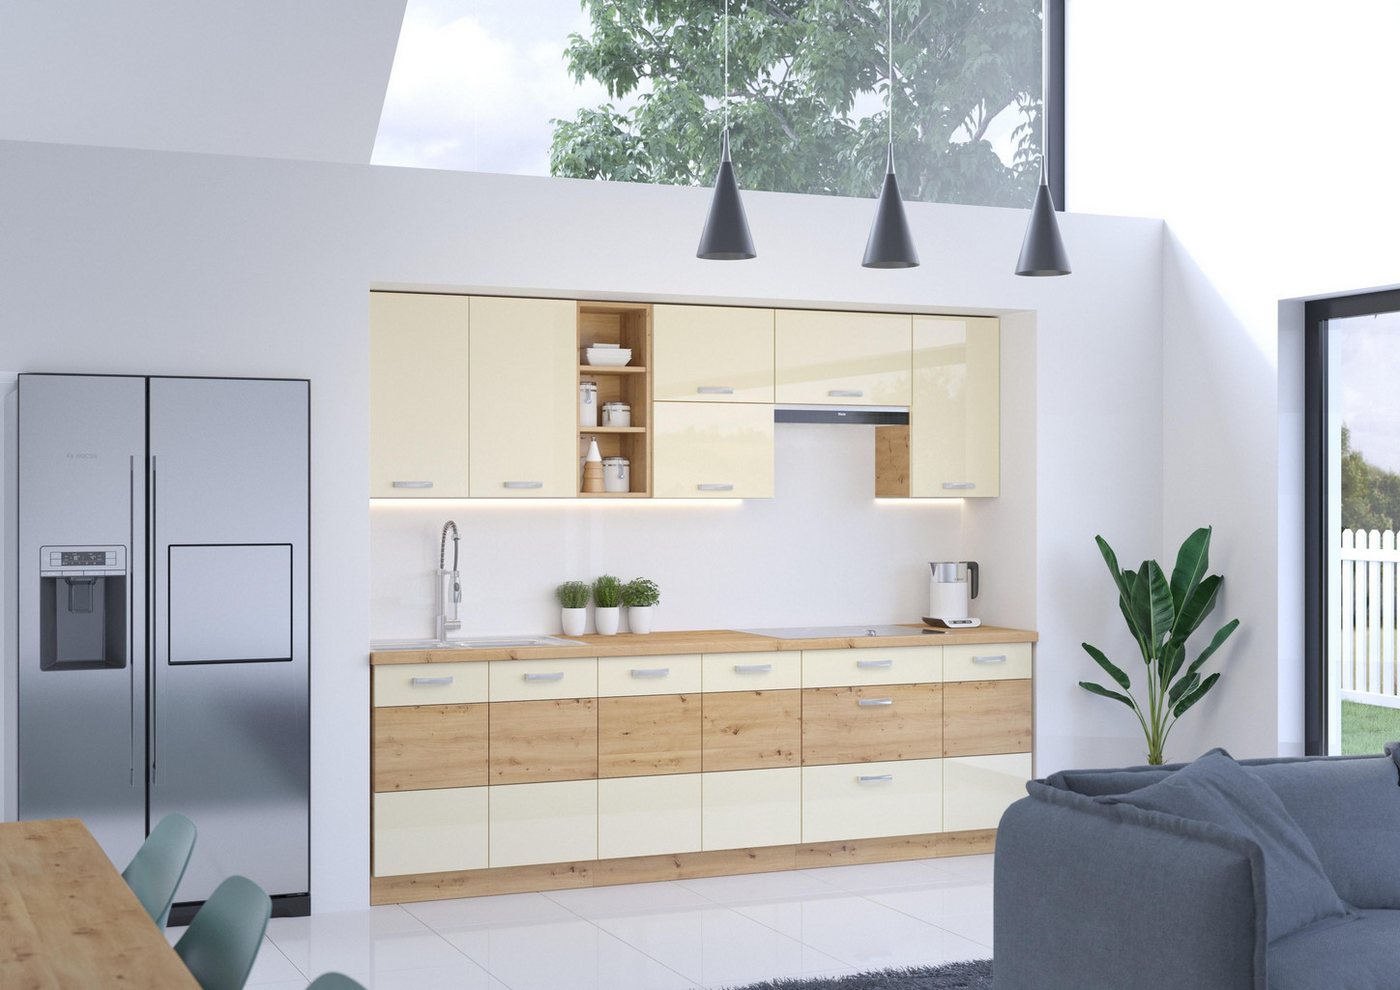 ROYAL24_MARKT Küchenzeile - Funktionalität und Ästhetik perfekt kombiniert, Modernes Design - Hochwertige Materialien. von ROYAL24_MARKT